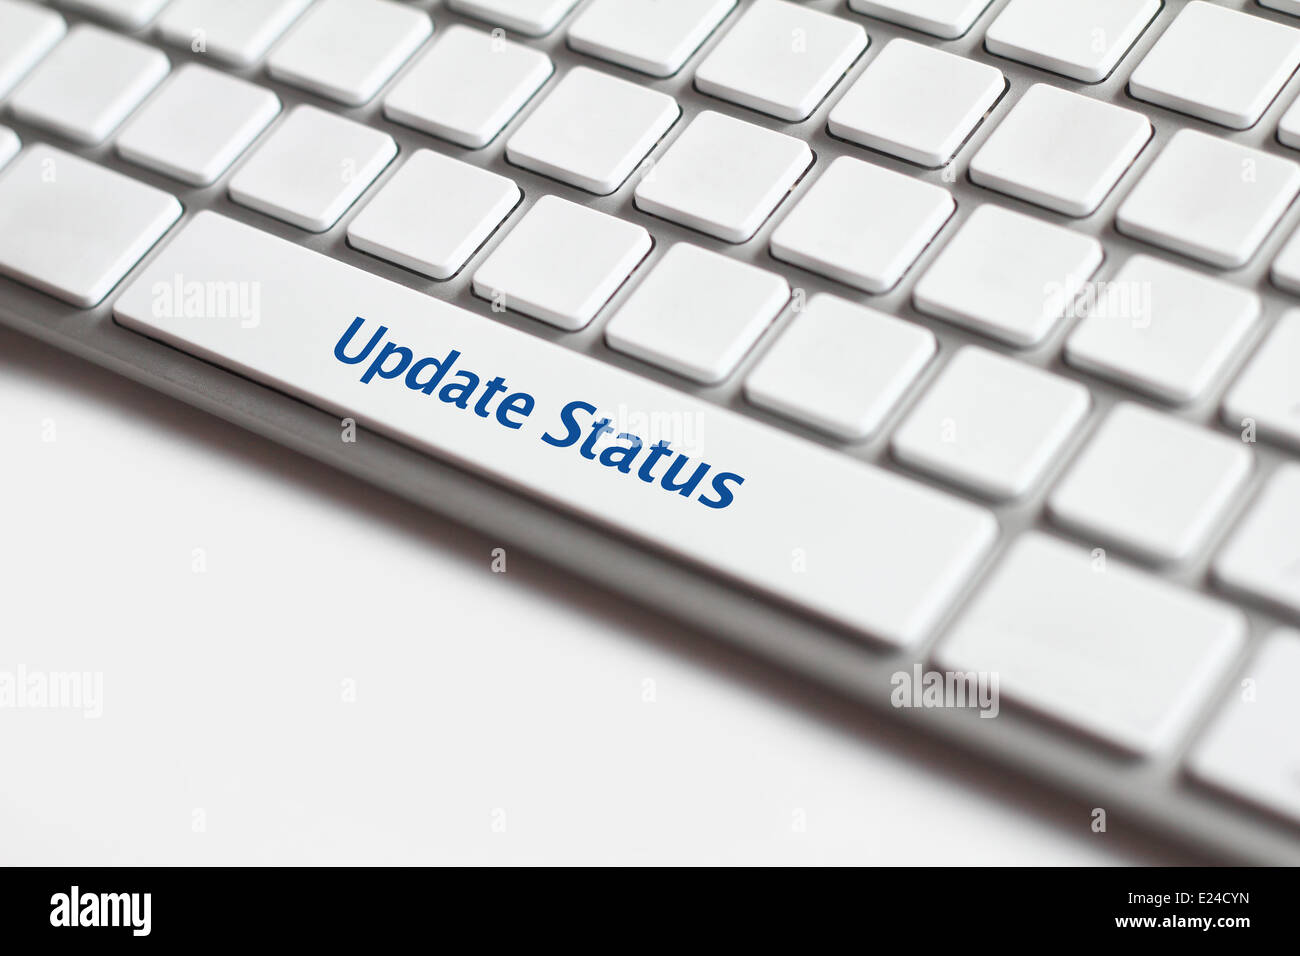 Foto Update Status-Taste auf die weiße Tastatur. Stockfoto